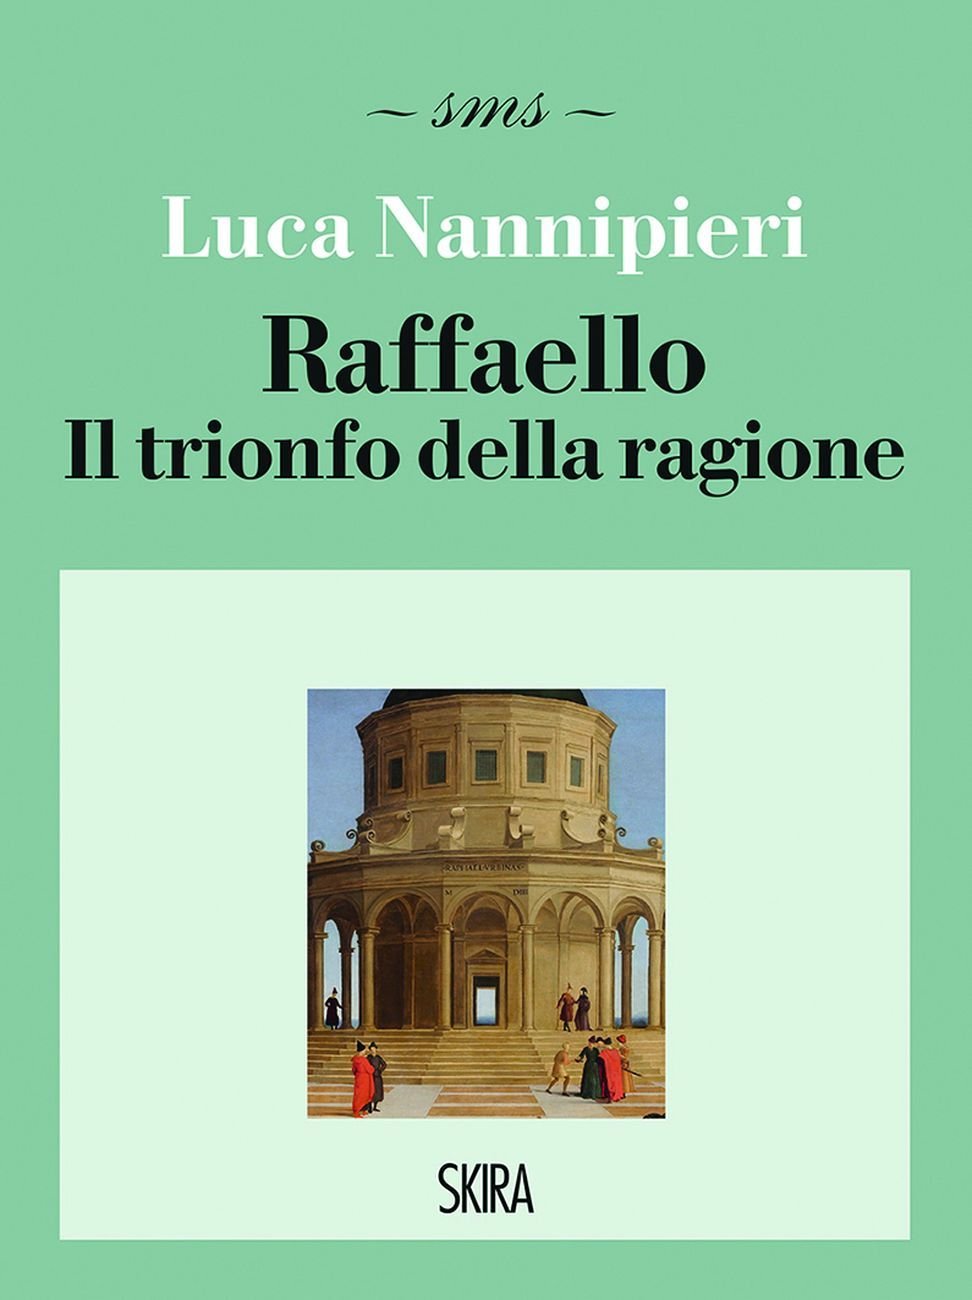 Luca Nannipieri – Raffaello. Il trionfo della ragione (Skira, Milano 2020)